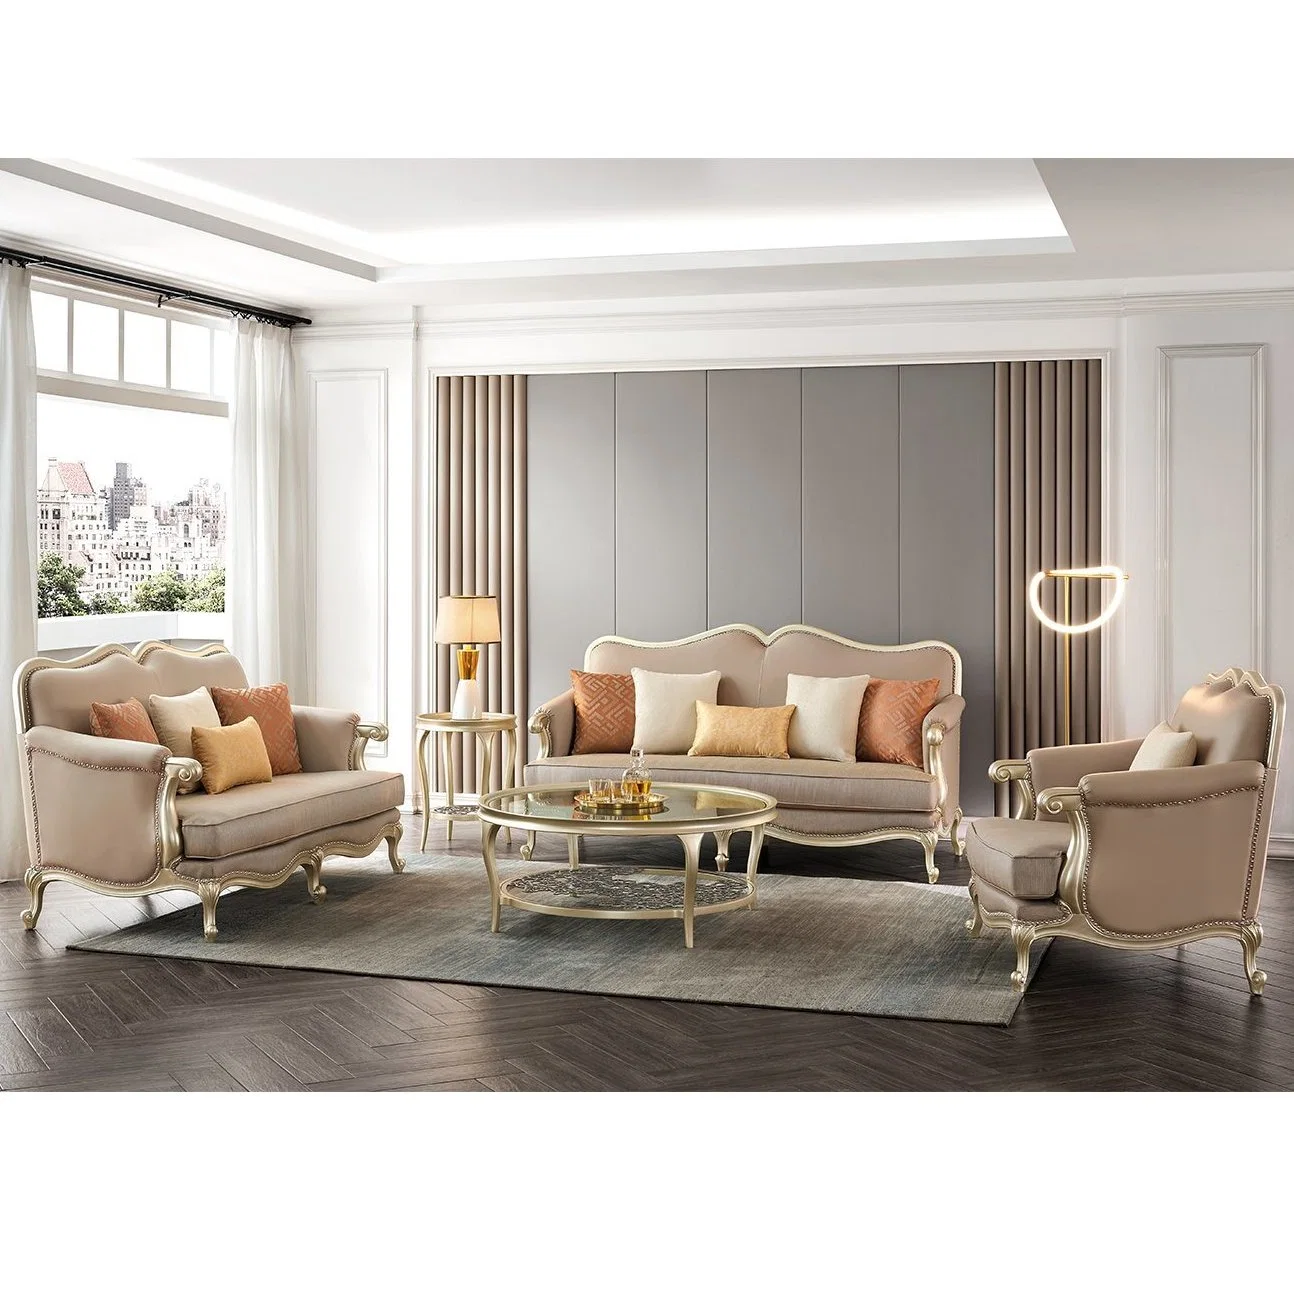 Moderne Luxus Holz Home Sofa-Set Sektionale Sofa Doppel Leder Sofa Wohnzimmer Möbel